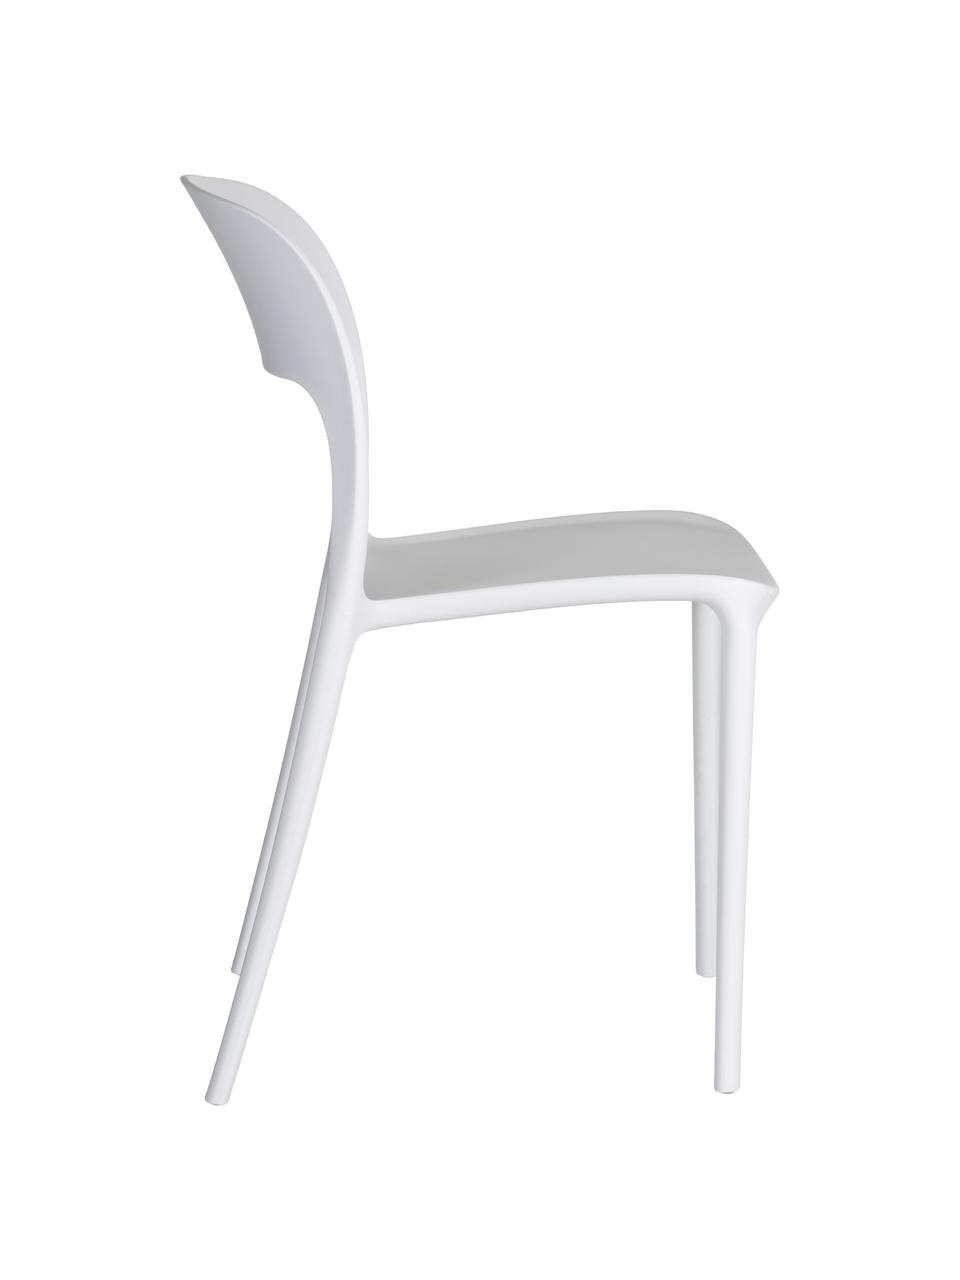 Krzesło z tworzywa sztucznego Valeria, Tworzywo sztuczne (PP), Biały, S 43 x G 43 cm